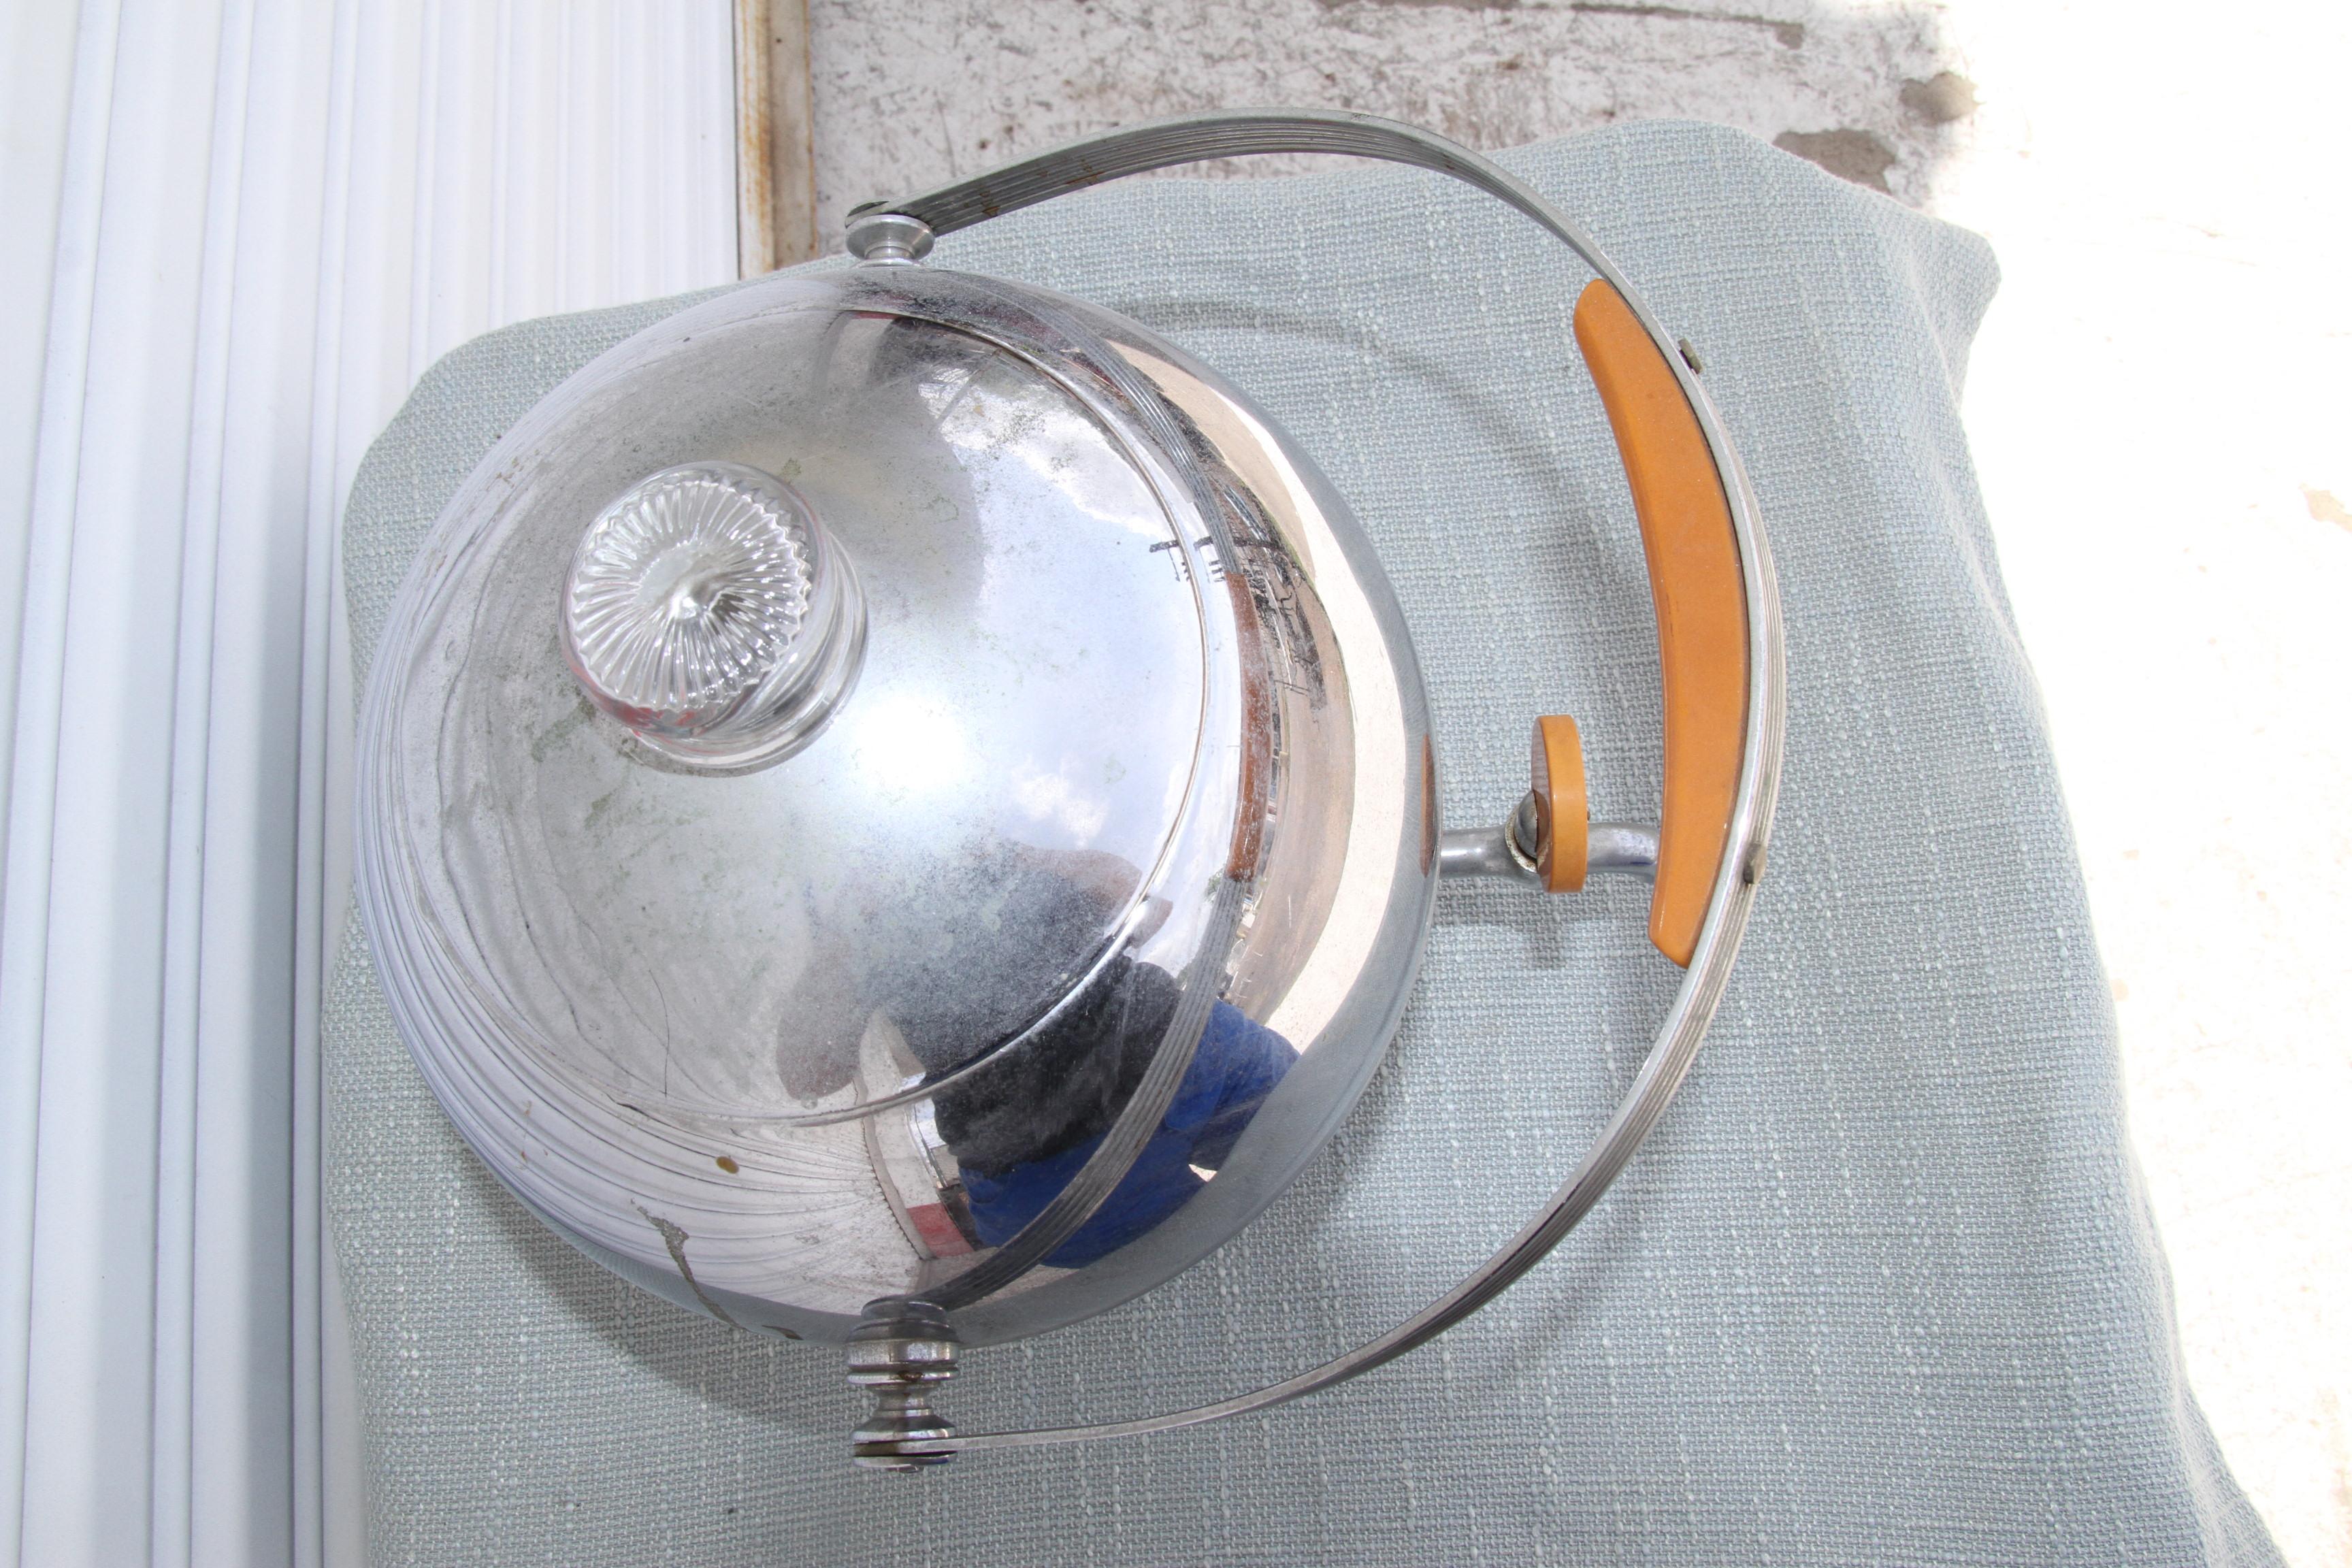 Art-Deco-Kaffeemaschine aus Chrom und Bakelit von Manning Bowman. Der kugelförmige Perkolator hat einen Bakelitgriff, einen Drehknopf und einen Sockel.  

Höhe: 14,5 Zoll
Breite: 10 Zoll 
Tiefe: 11 Zoll